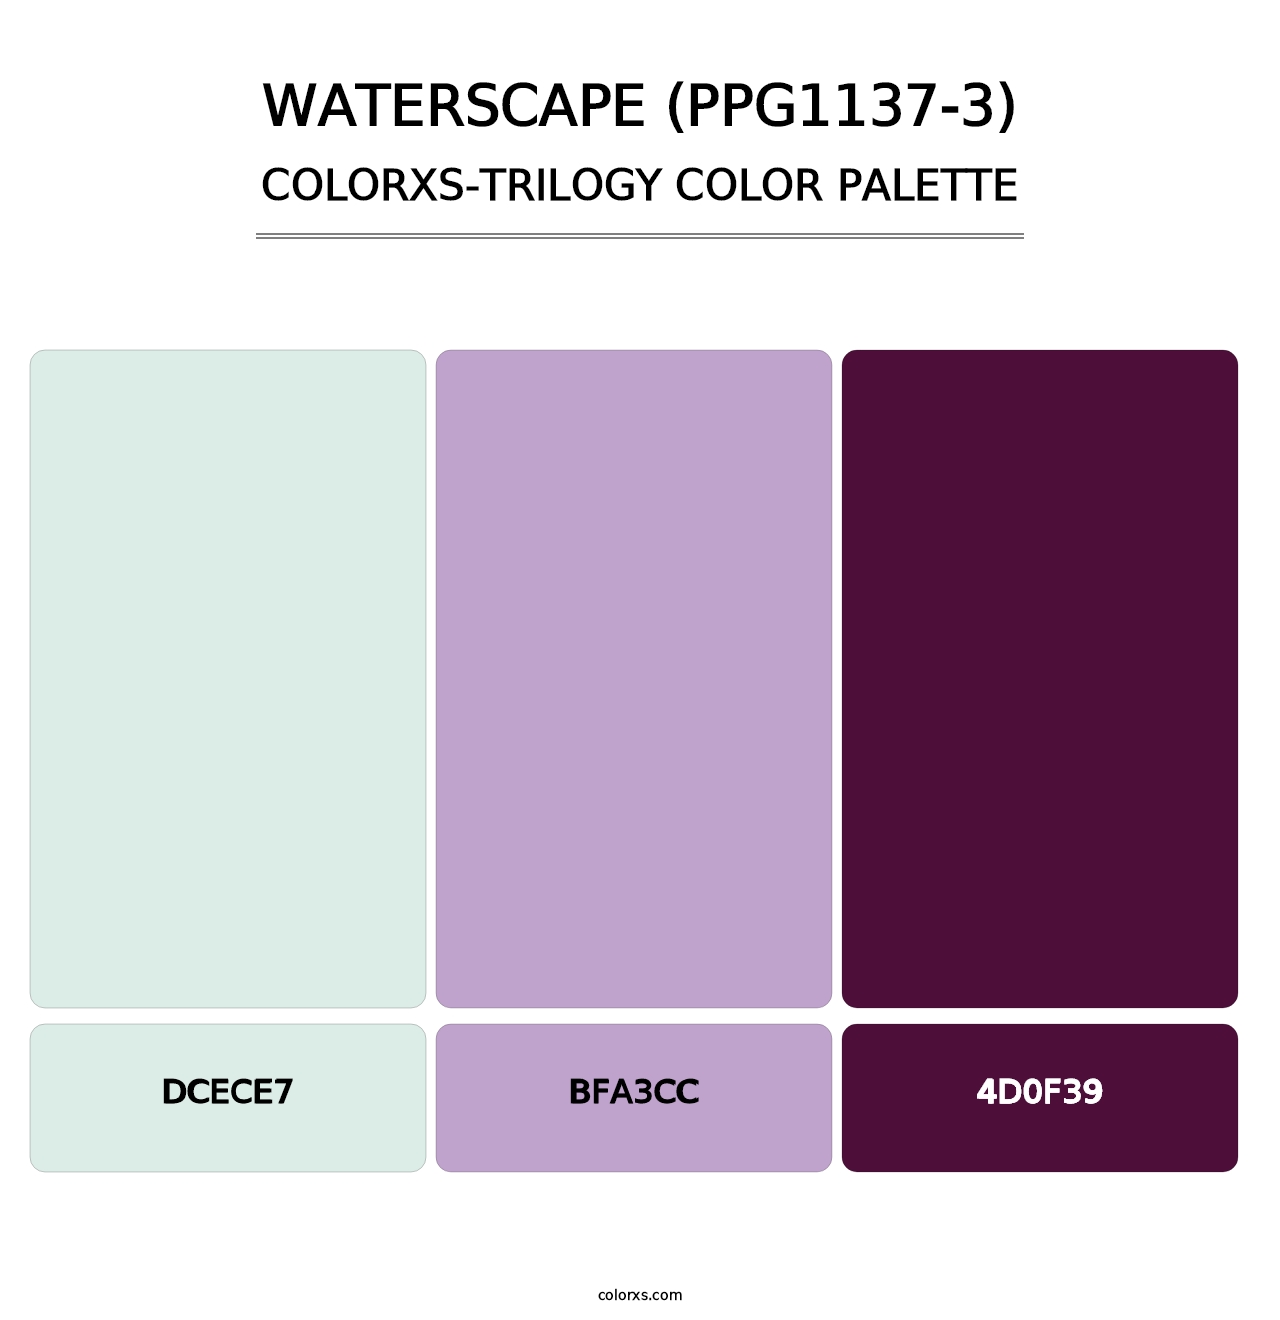 Waterscape (PPG1137-3) - Colorxs Trilogy Palette